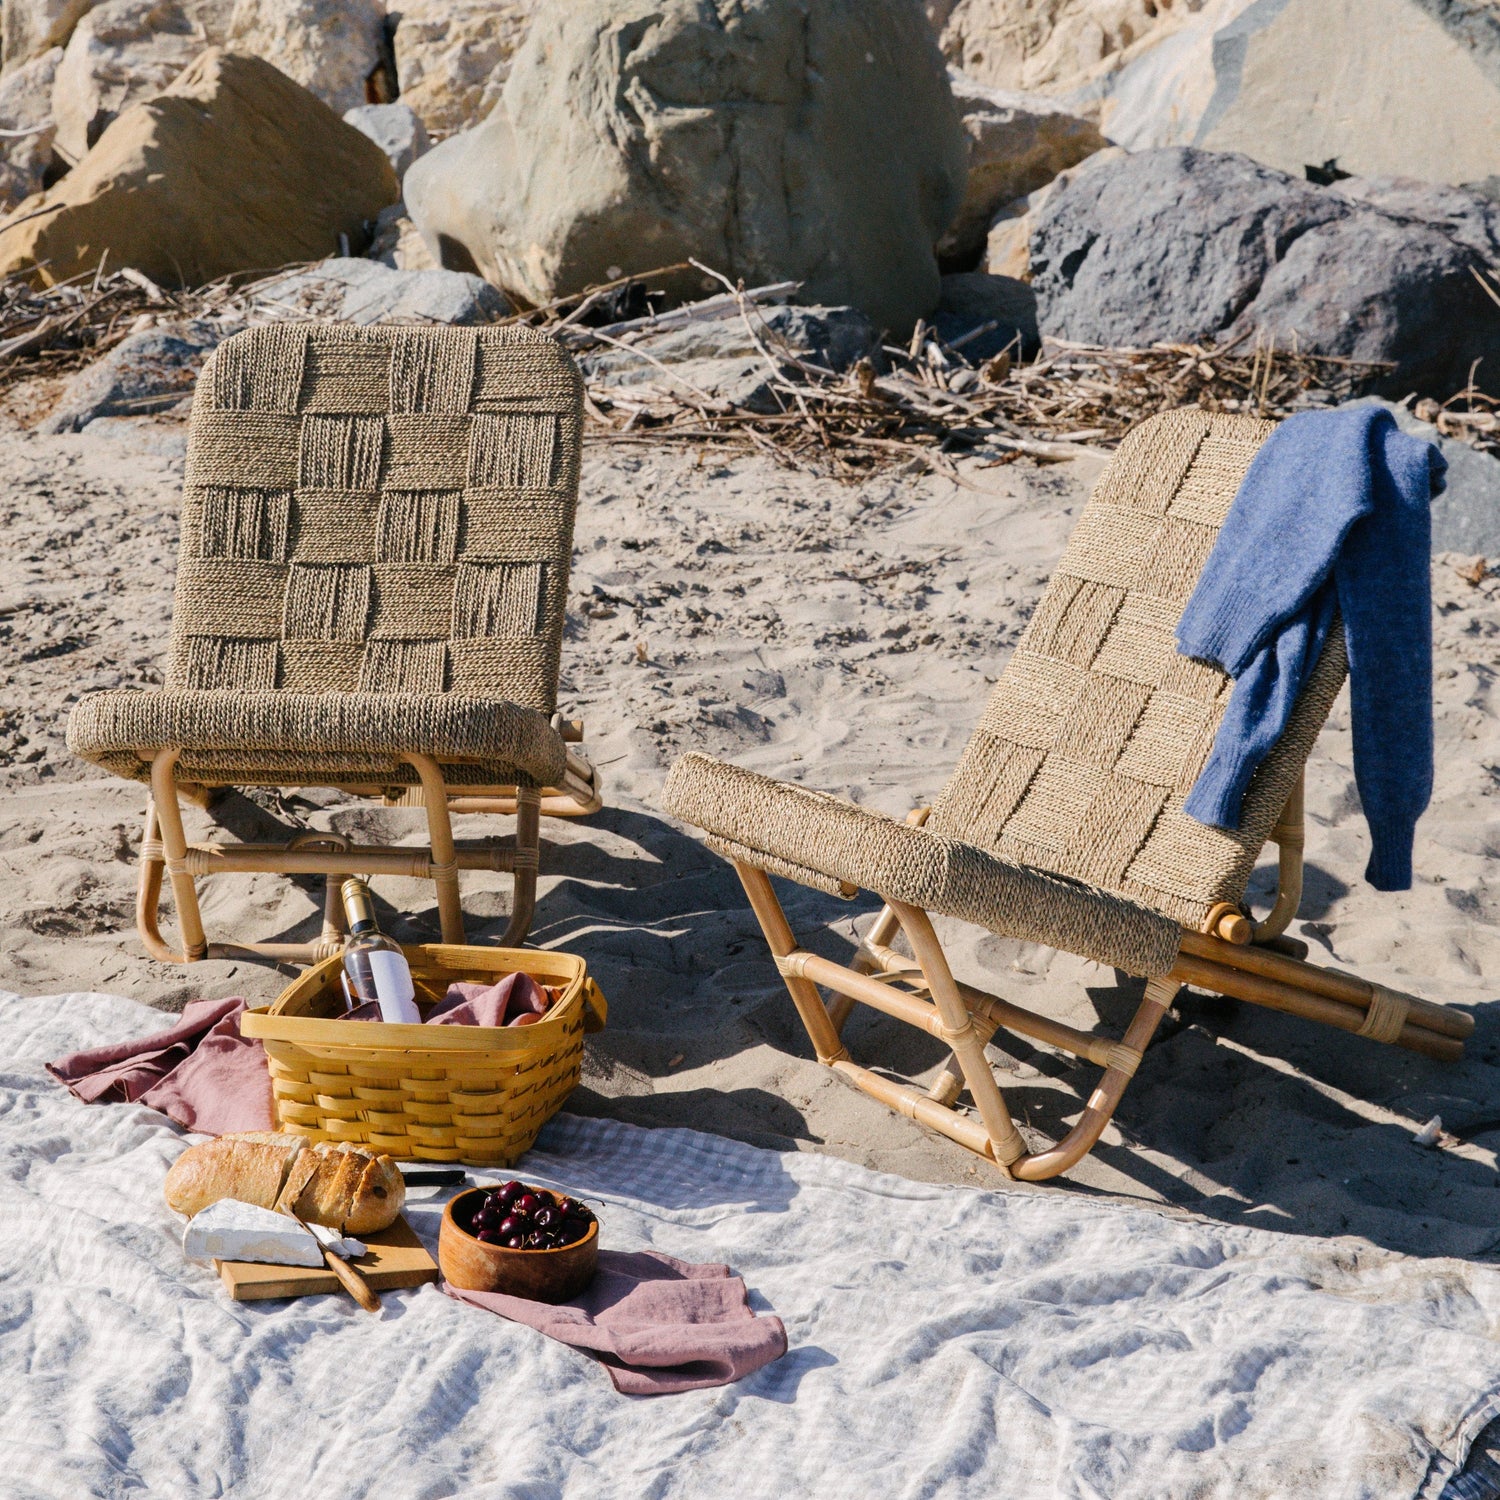 cabana beach chair on sand